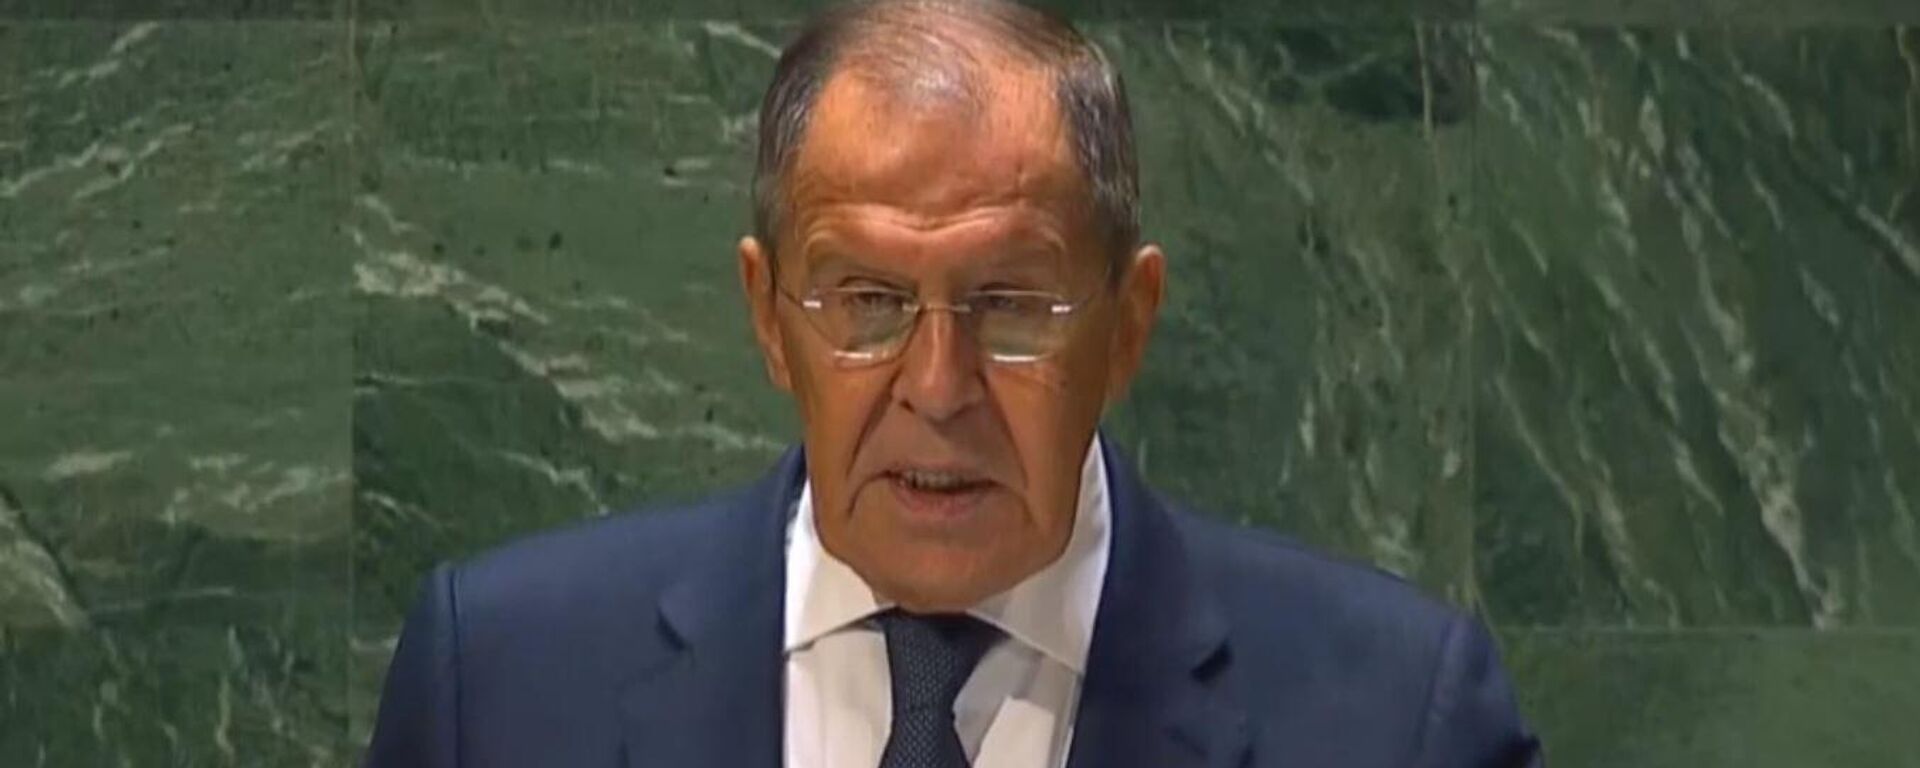 Seguéi Lavrov, canciller de Rusia, durante su intervención en la Asamblea General de la ONU, el 23 de septiembre de 2023 - Sputnik Mundo, 1920, 23.09.2023